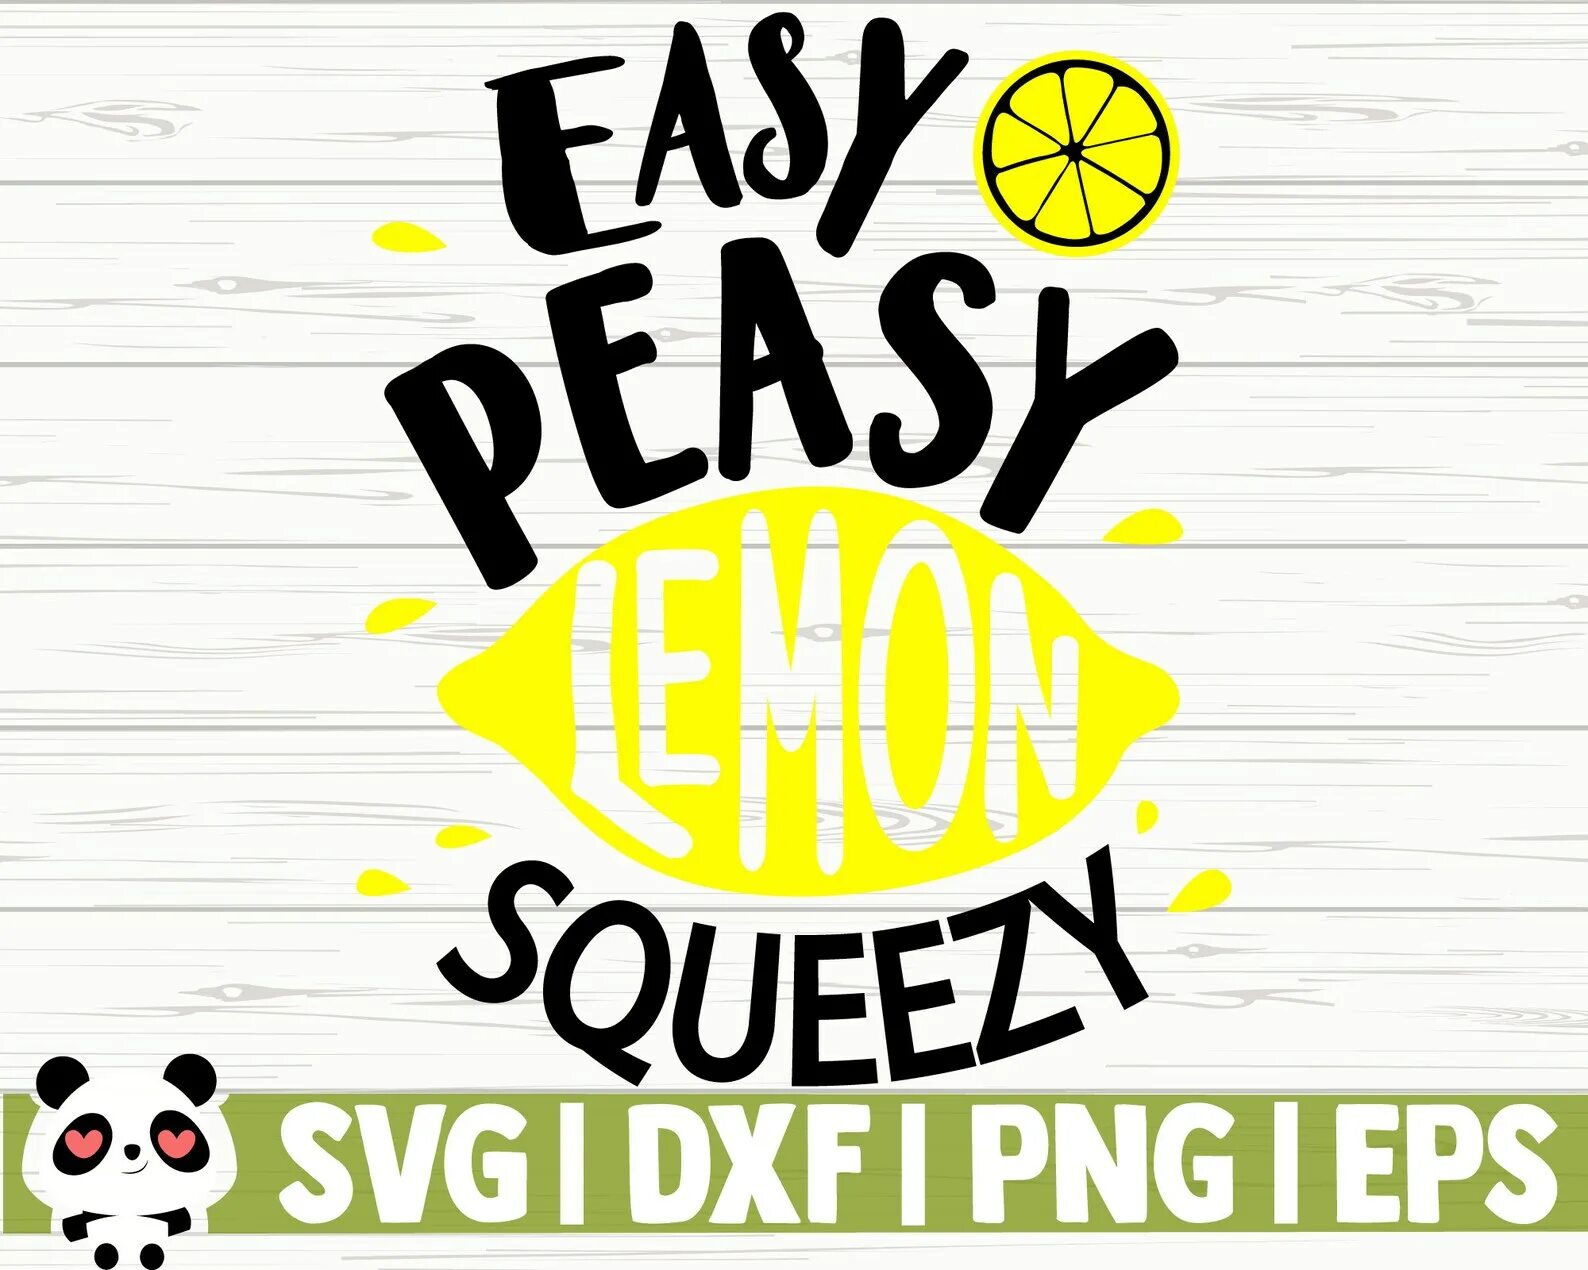 Easy Peasy Lemon Squeezy. Easy Peasy Lemon Squeezy картинка. Торговая марка easy Peasy. Lemon Squeezy группа. Easy peasy lemon